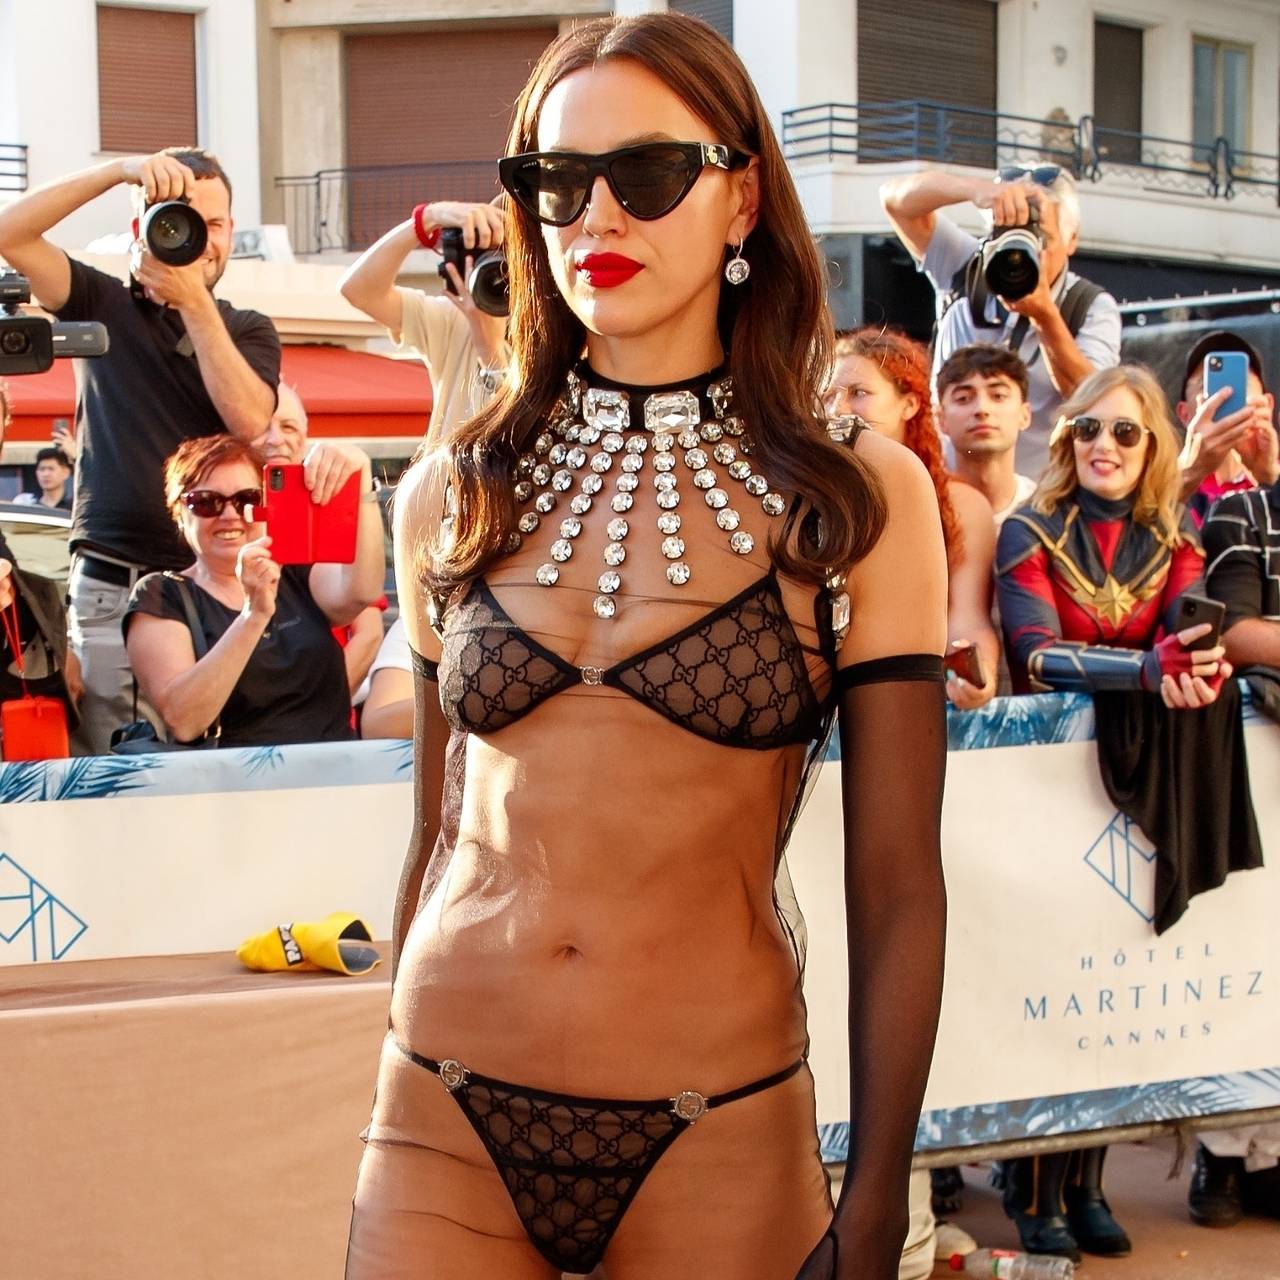 Секс-видео топ-модели Ирины Шейк взорвало интернет